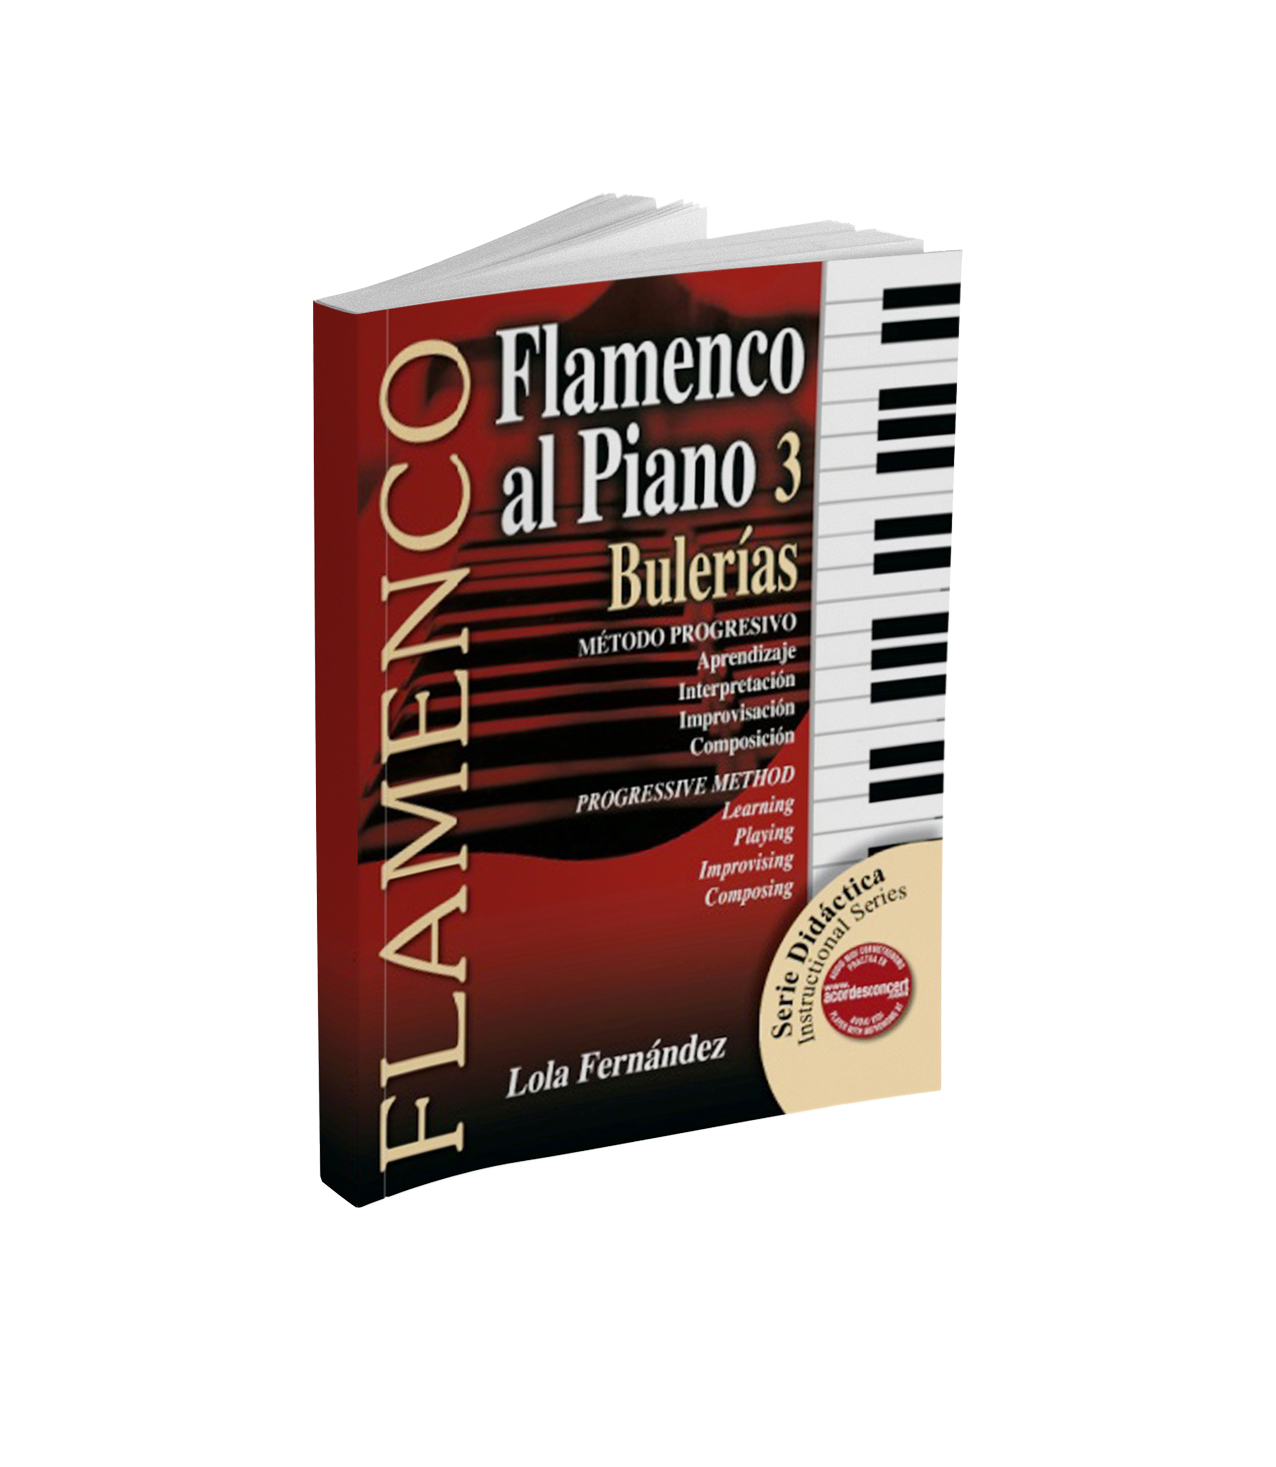 Flamenco piano sheet music book for bulería